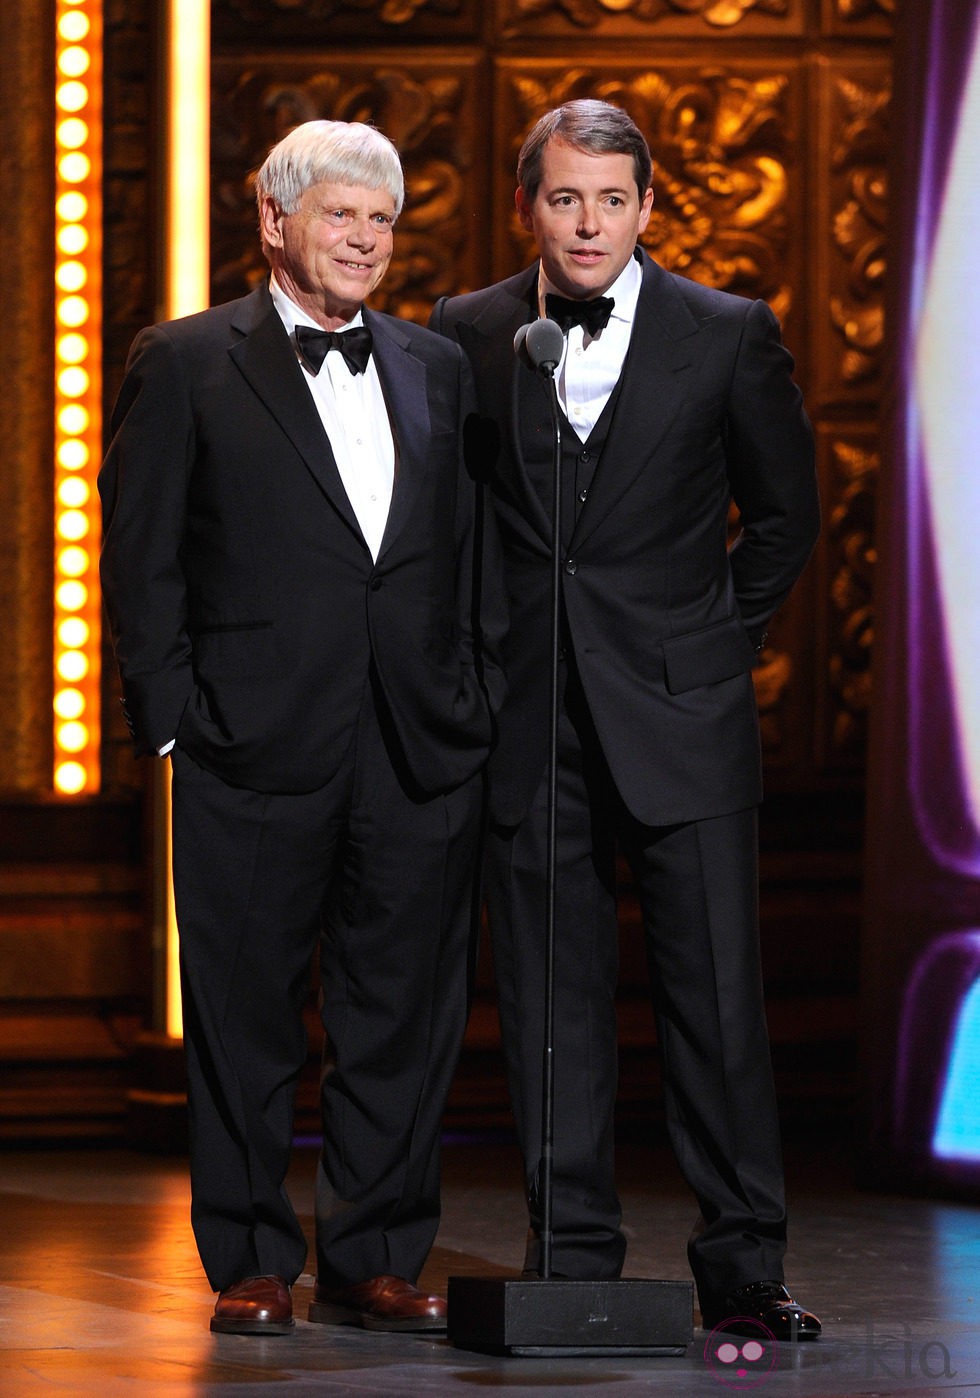 Robert Morse y Matthew Broderick en los Premios Tony 2011